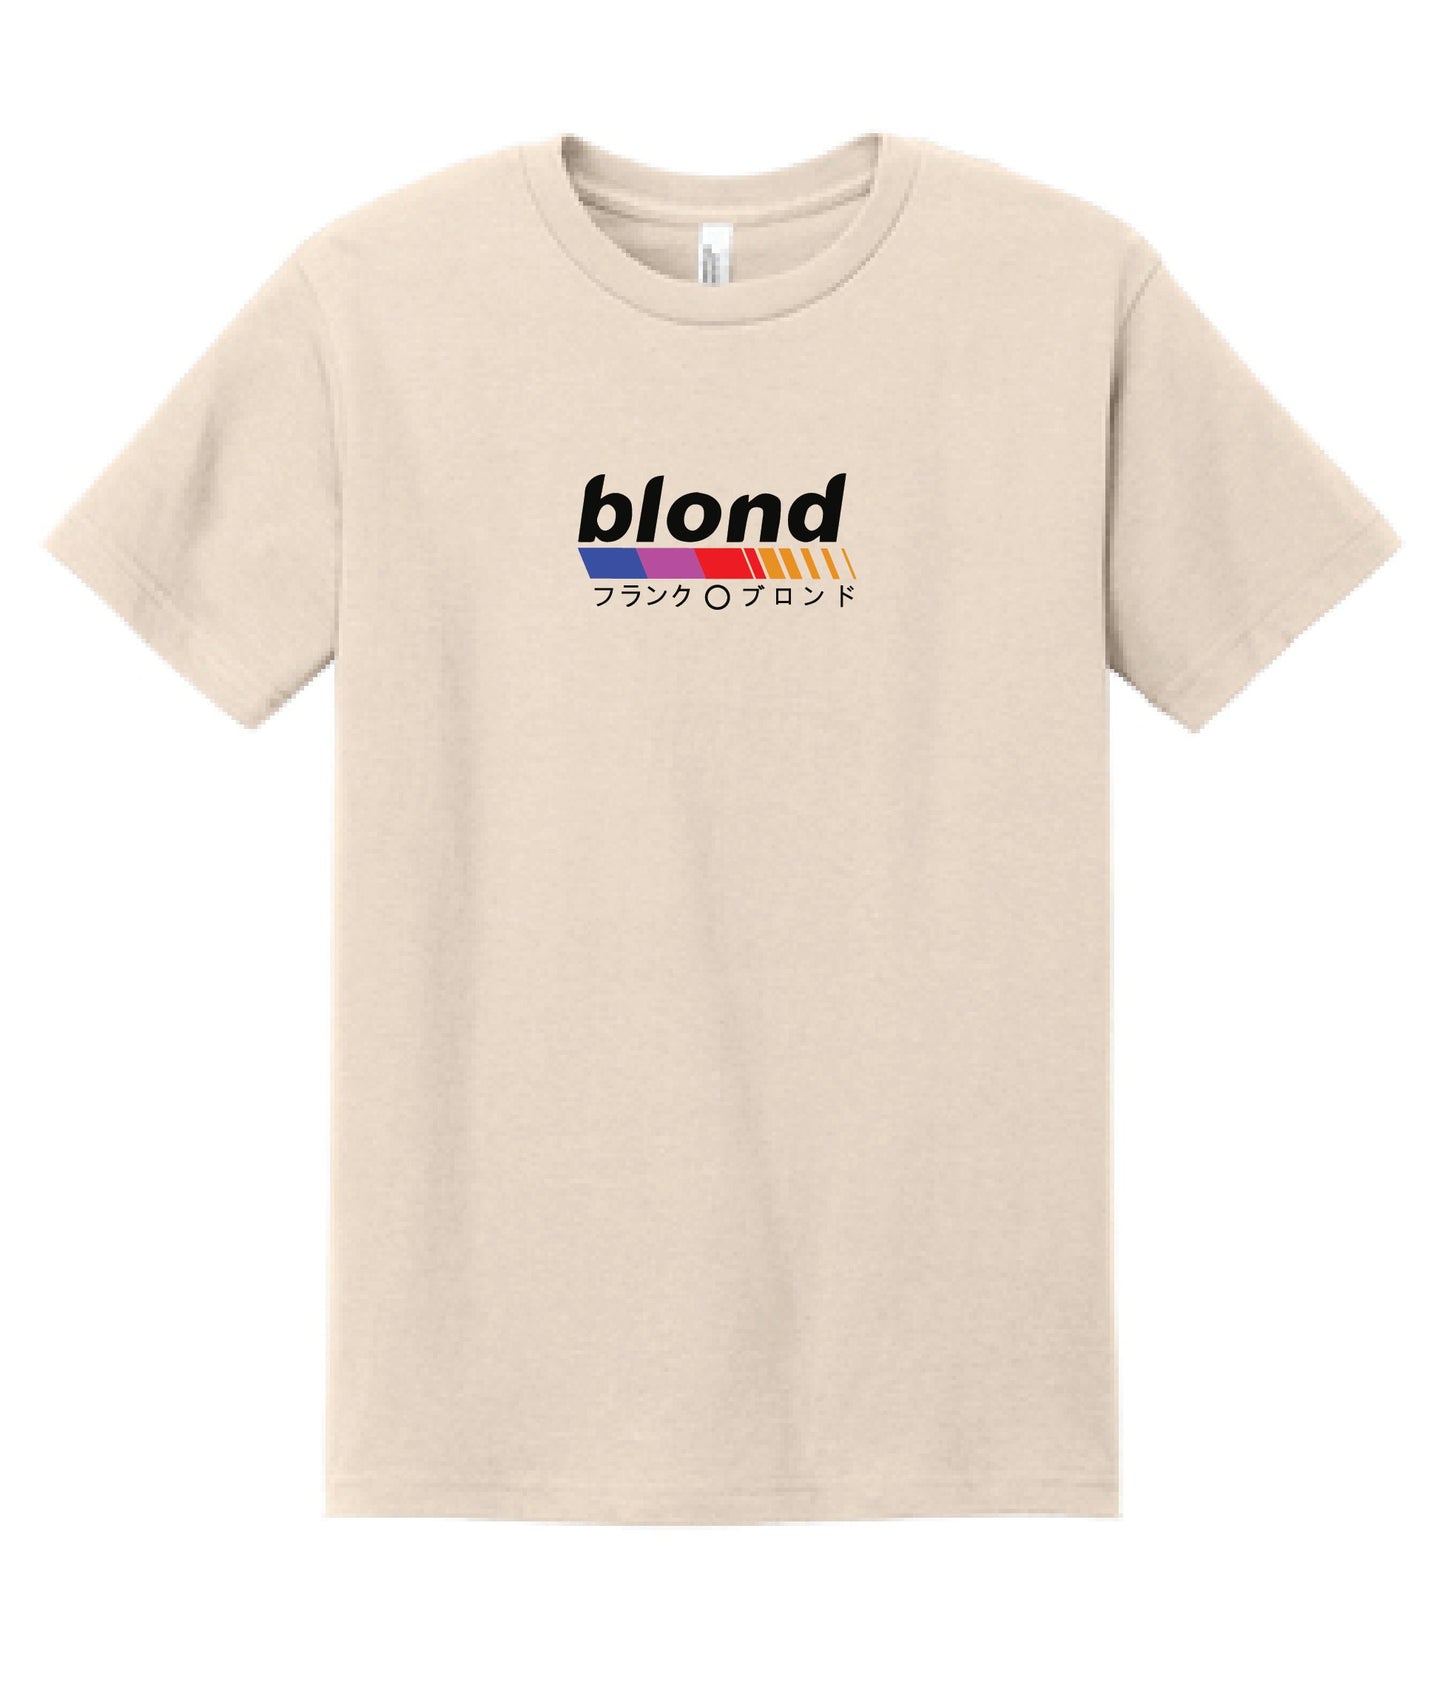 Frank Ocean T-Shirt | Blond Frank Ocean T-Shirt | Frank Ocean Blond White Ferrari | Music T-Shirt | Gift | Blond Album | Music T-shirt Gift